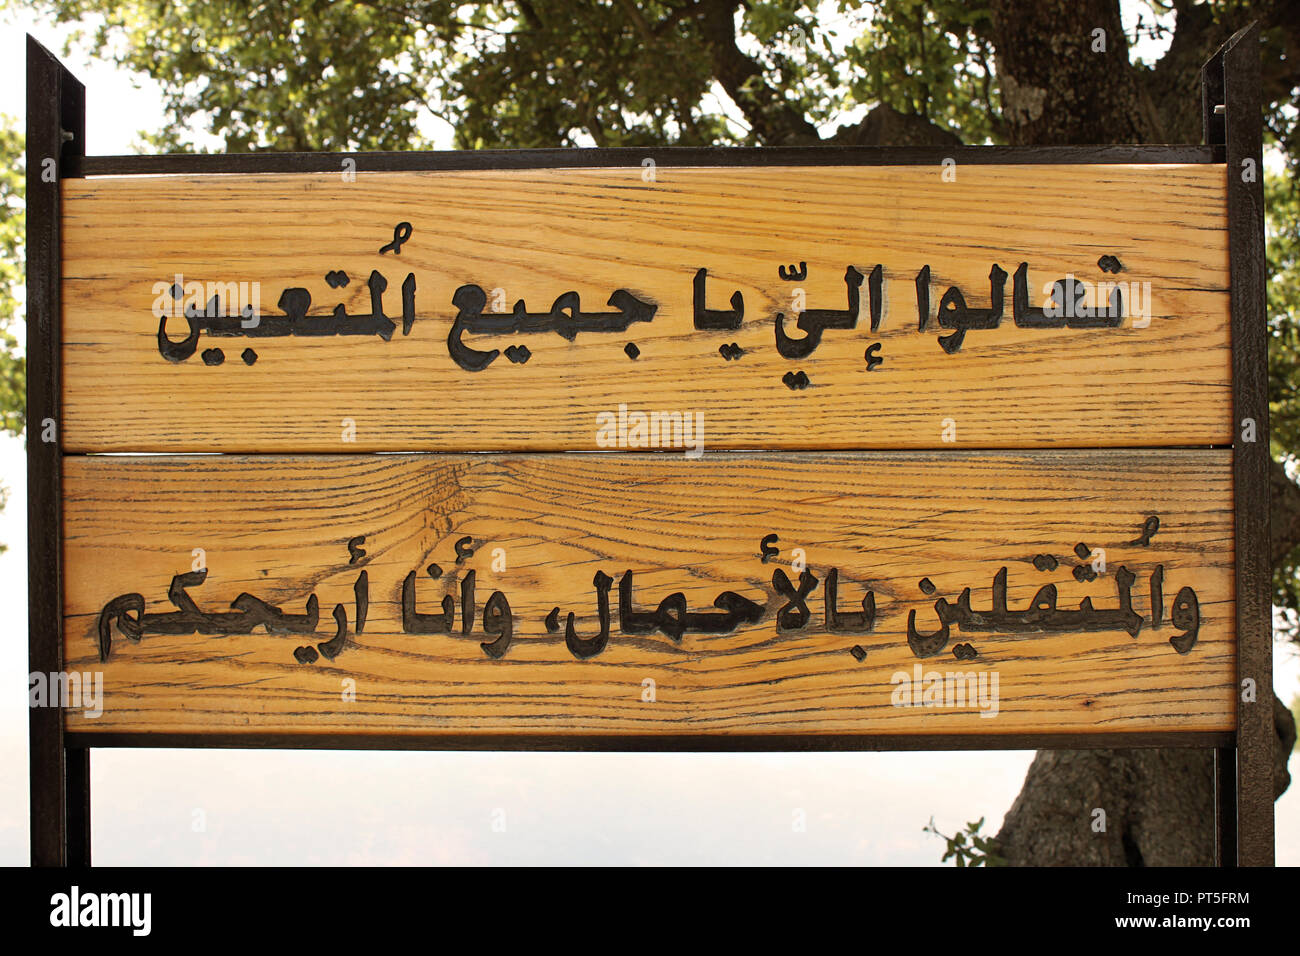 Arabische zitate mit übersetzung